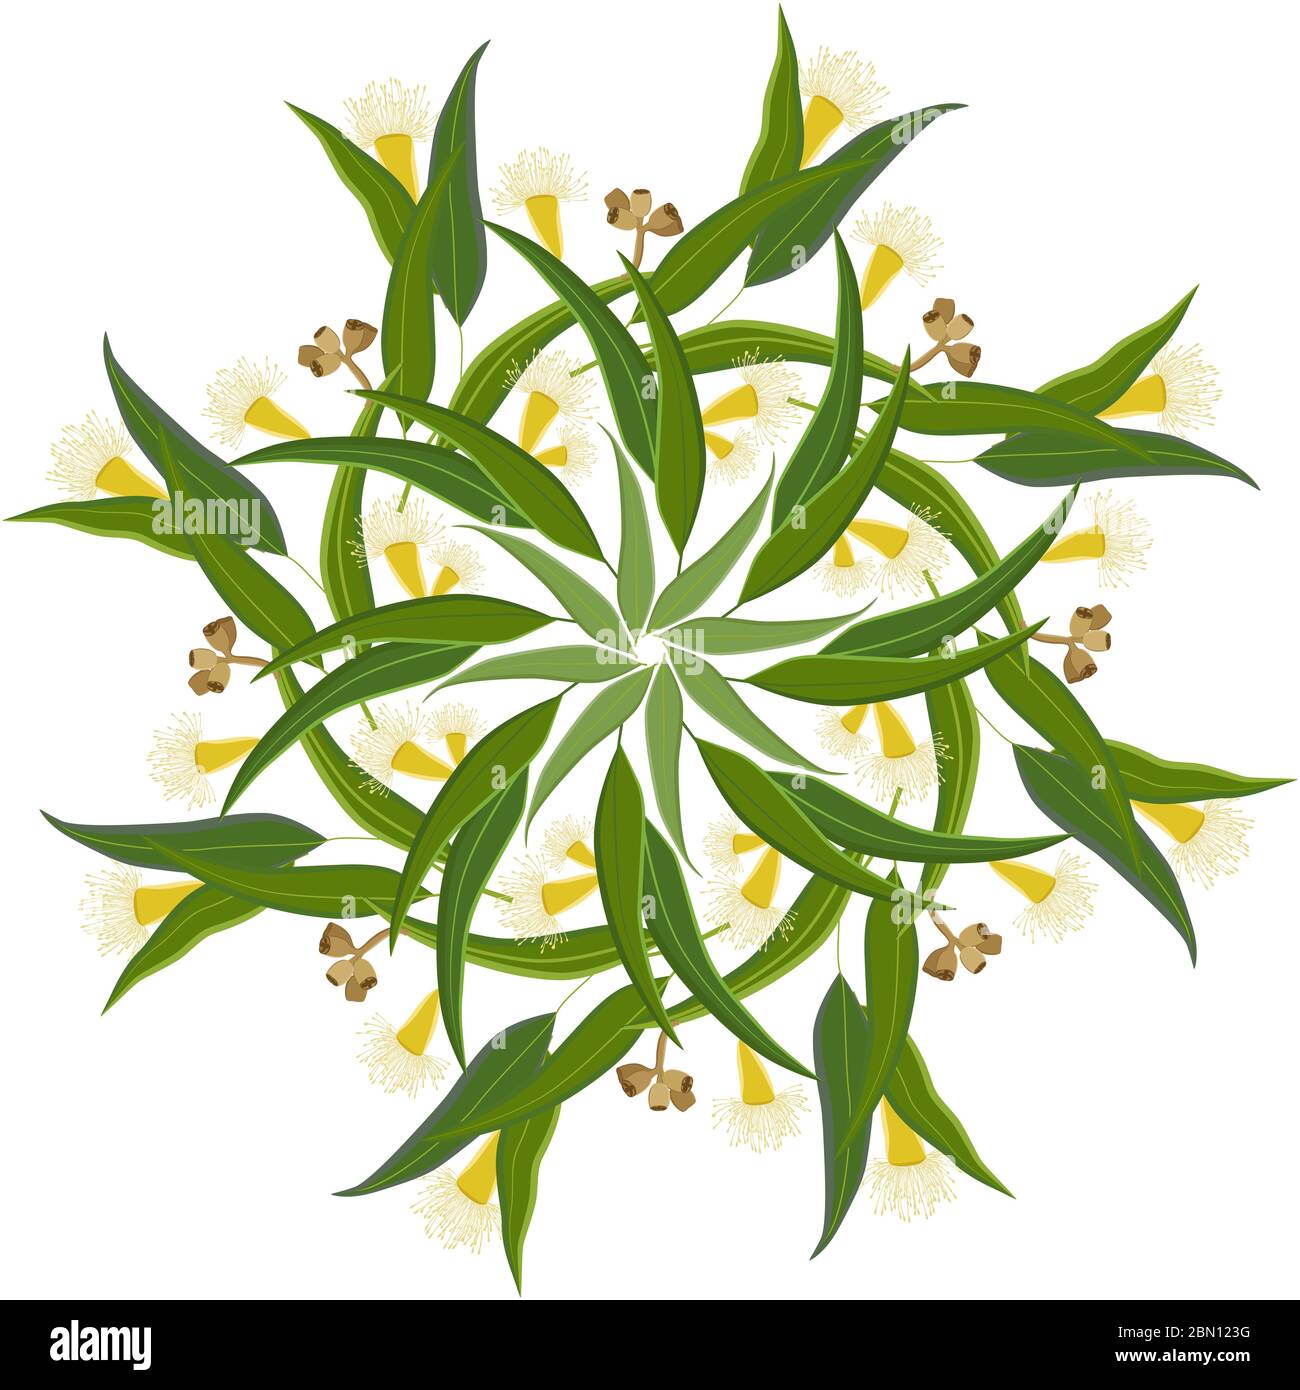 Décoration ronde abstraite, mandala avec feuilles d'eucalyptus et fleurs. Motif floral circulaire coloré, motif isolé sur fond blanc Illustration de Vecteur